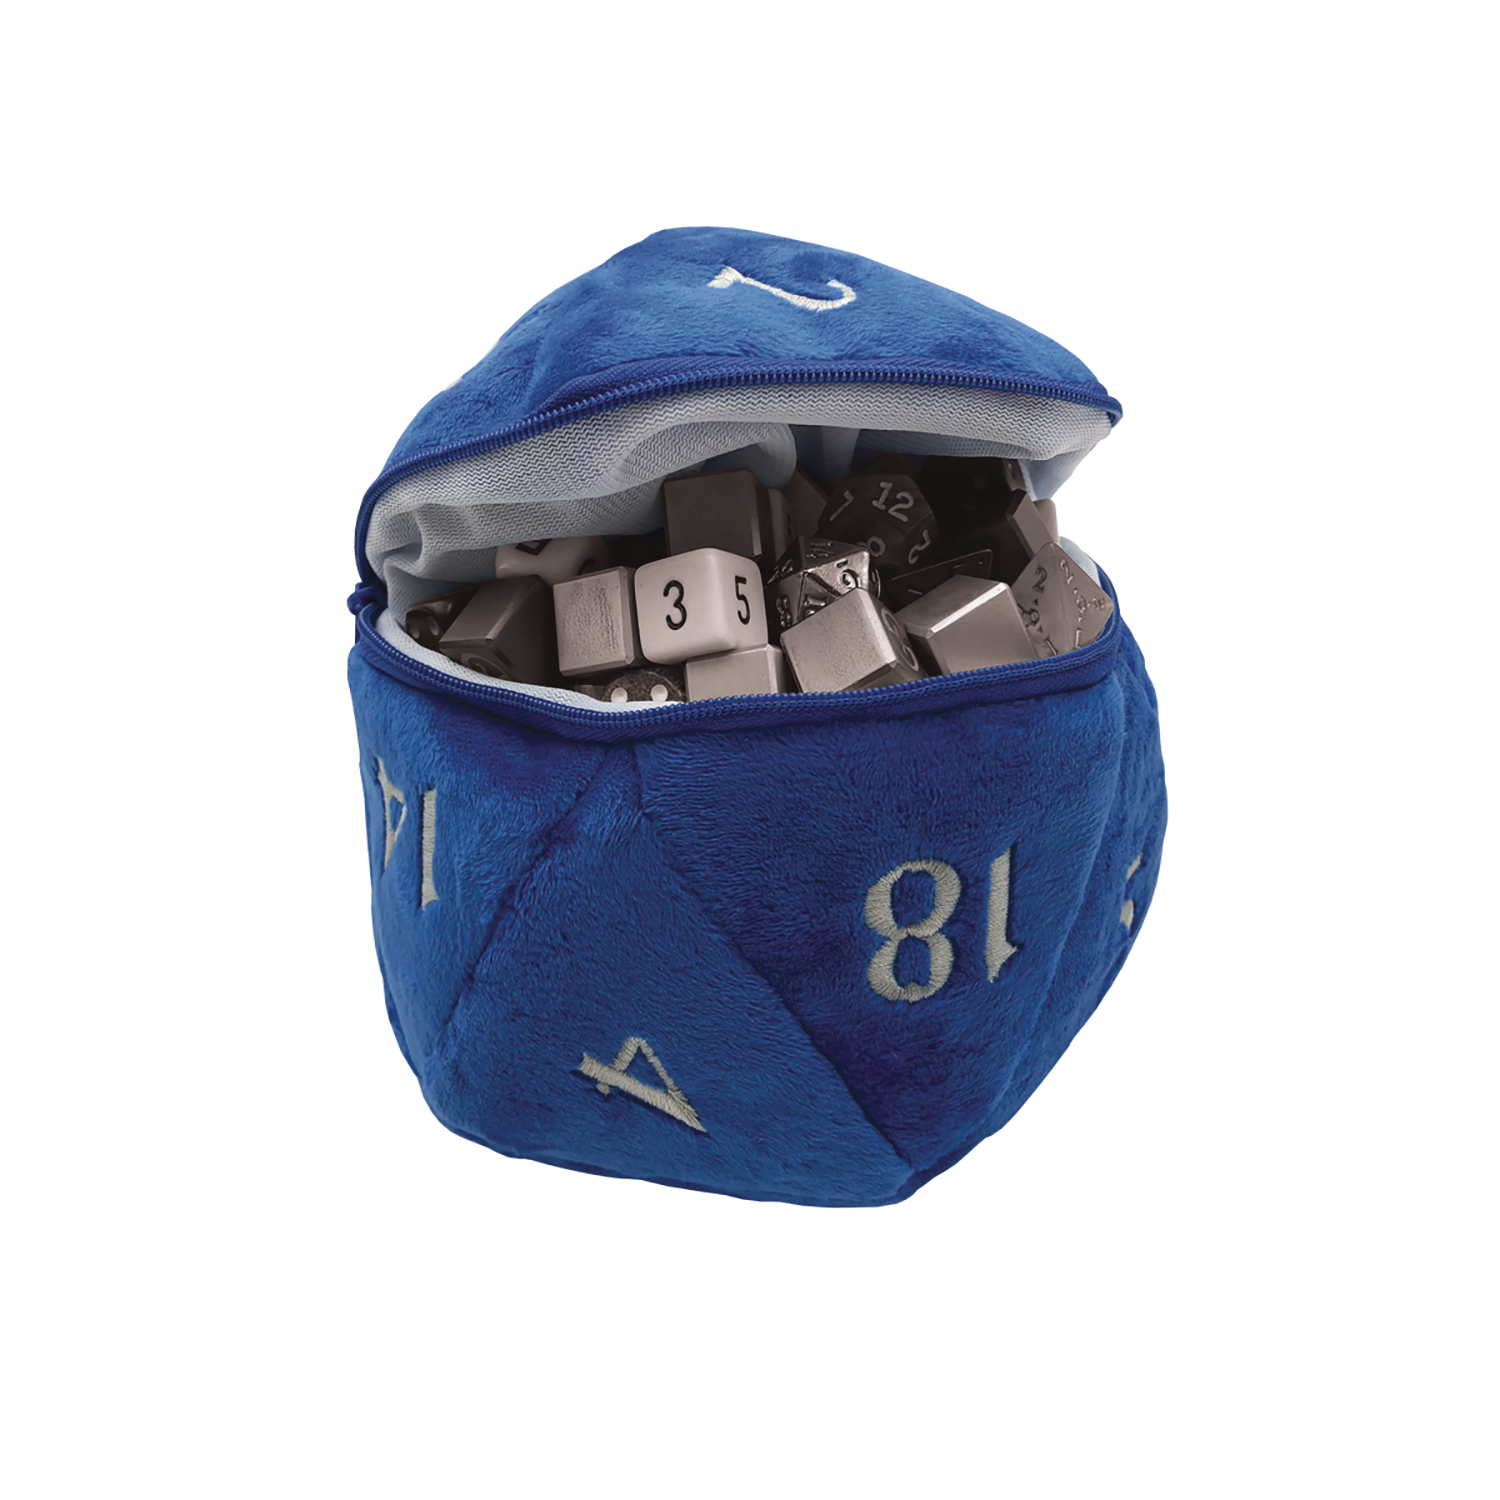 D20 Plush Dice Blue Bag